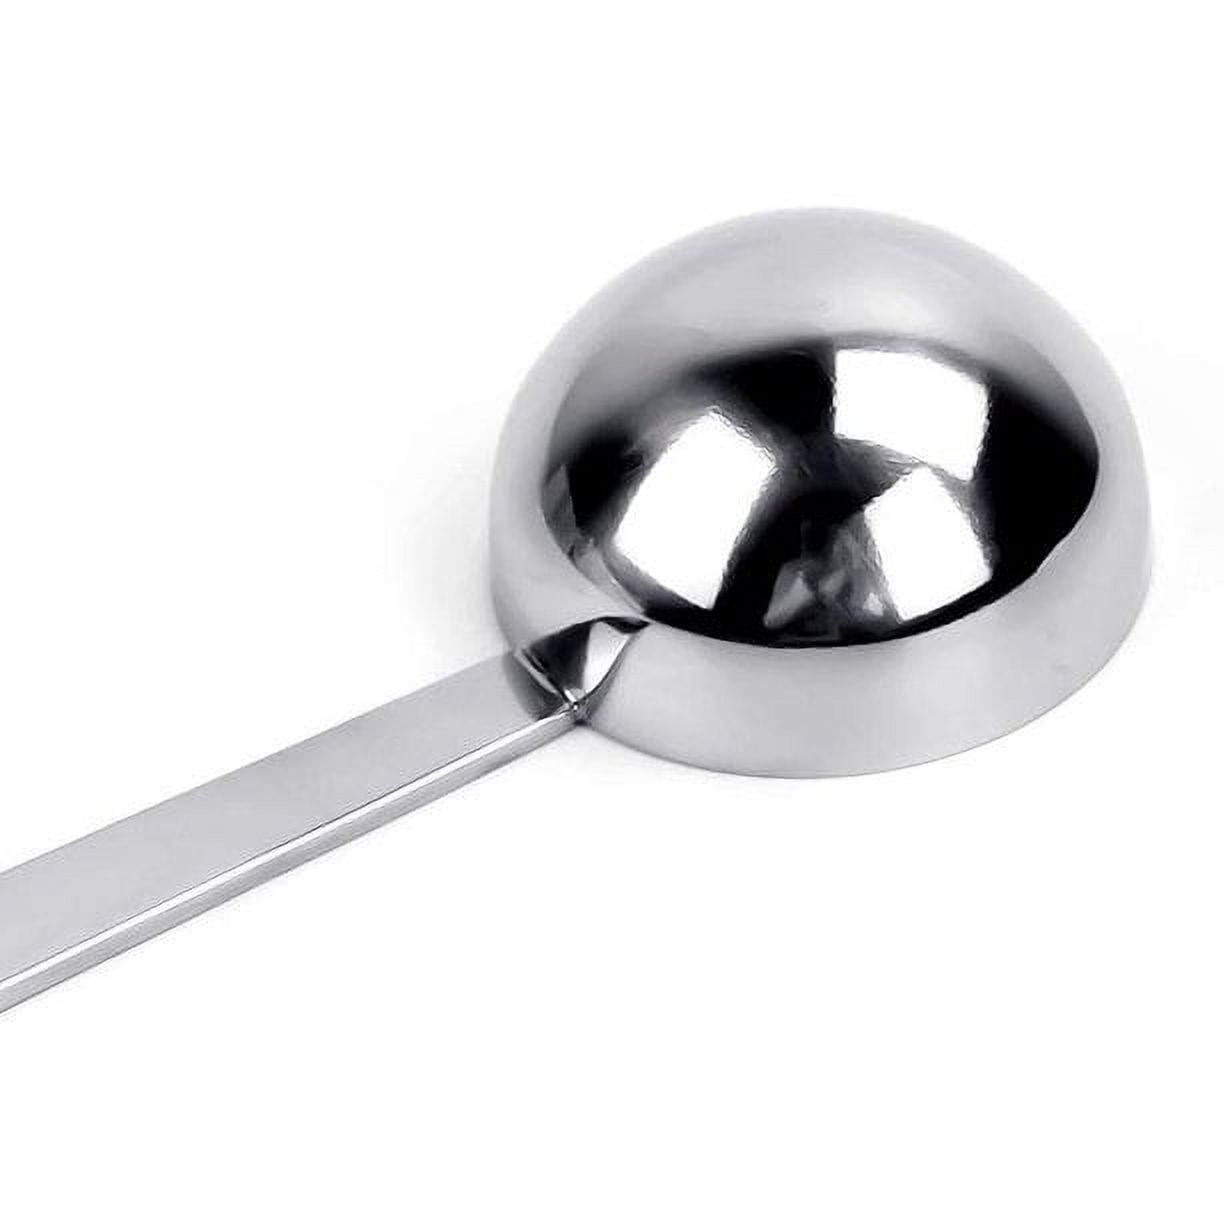 JOYFEEL Metal Tablespoon Measuring Spoon Stainless Steel Coffee